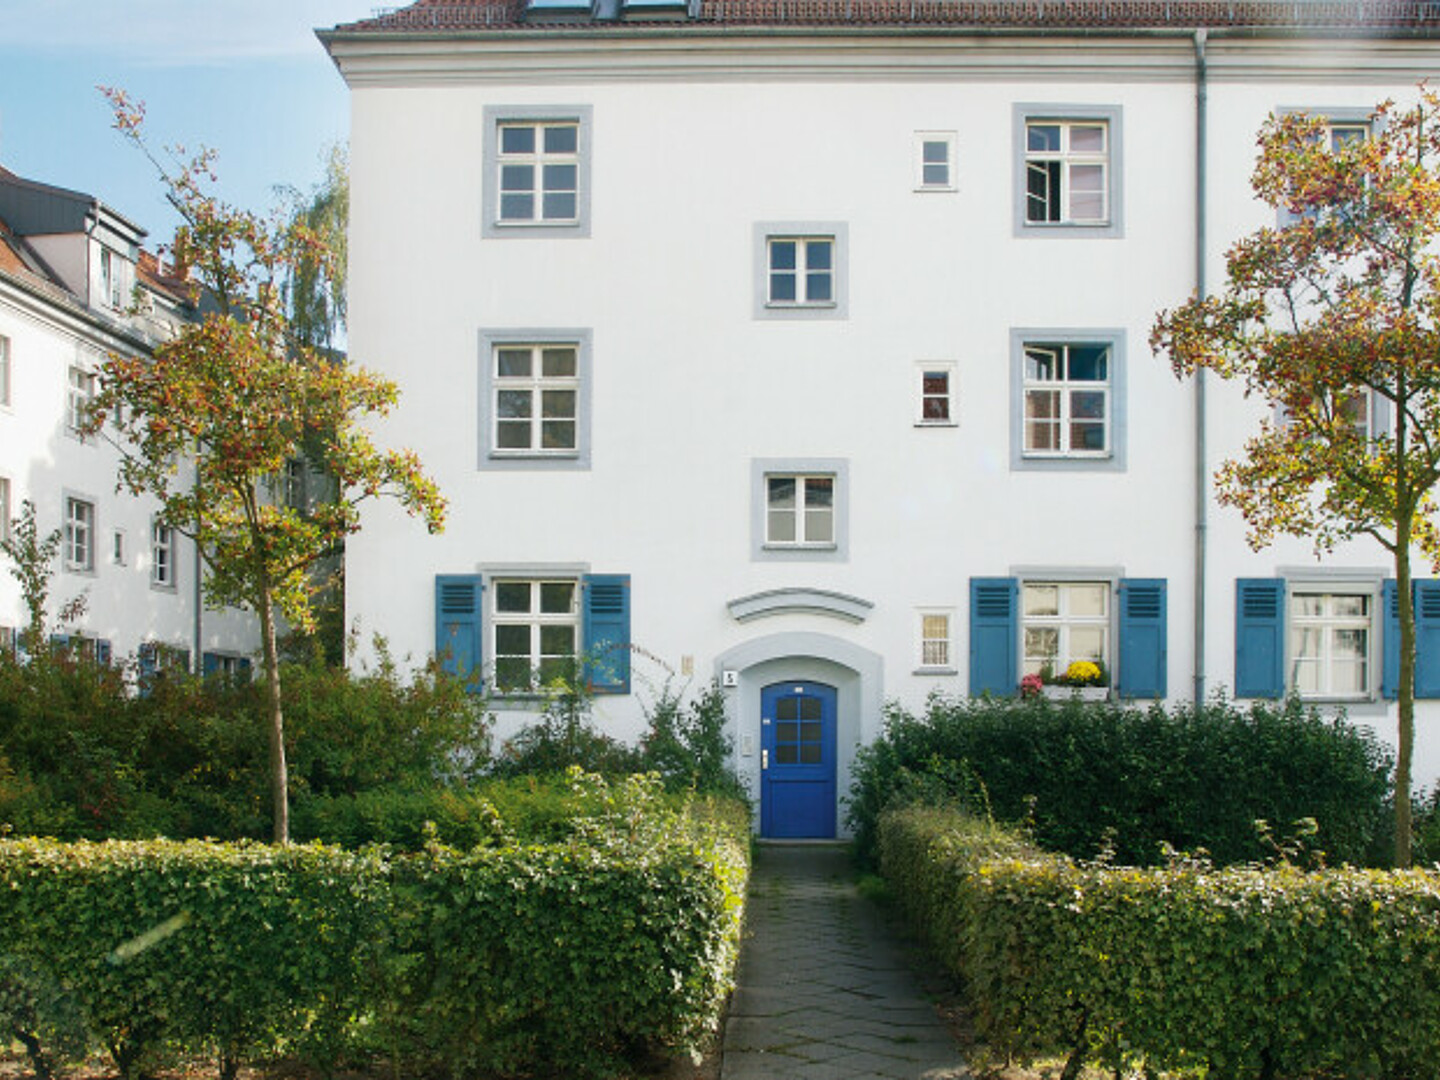 Wohnhaus im Schillerhof.